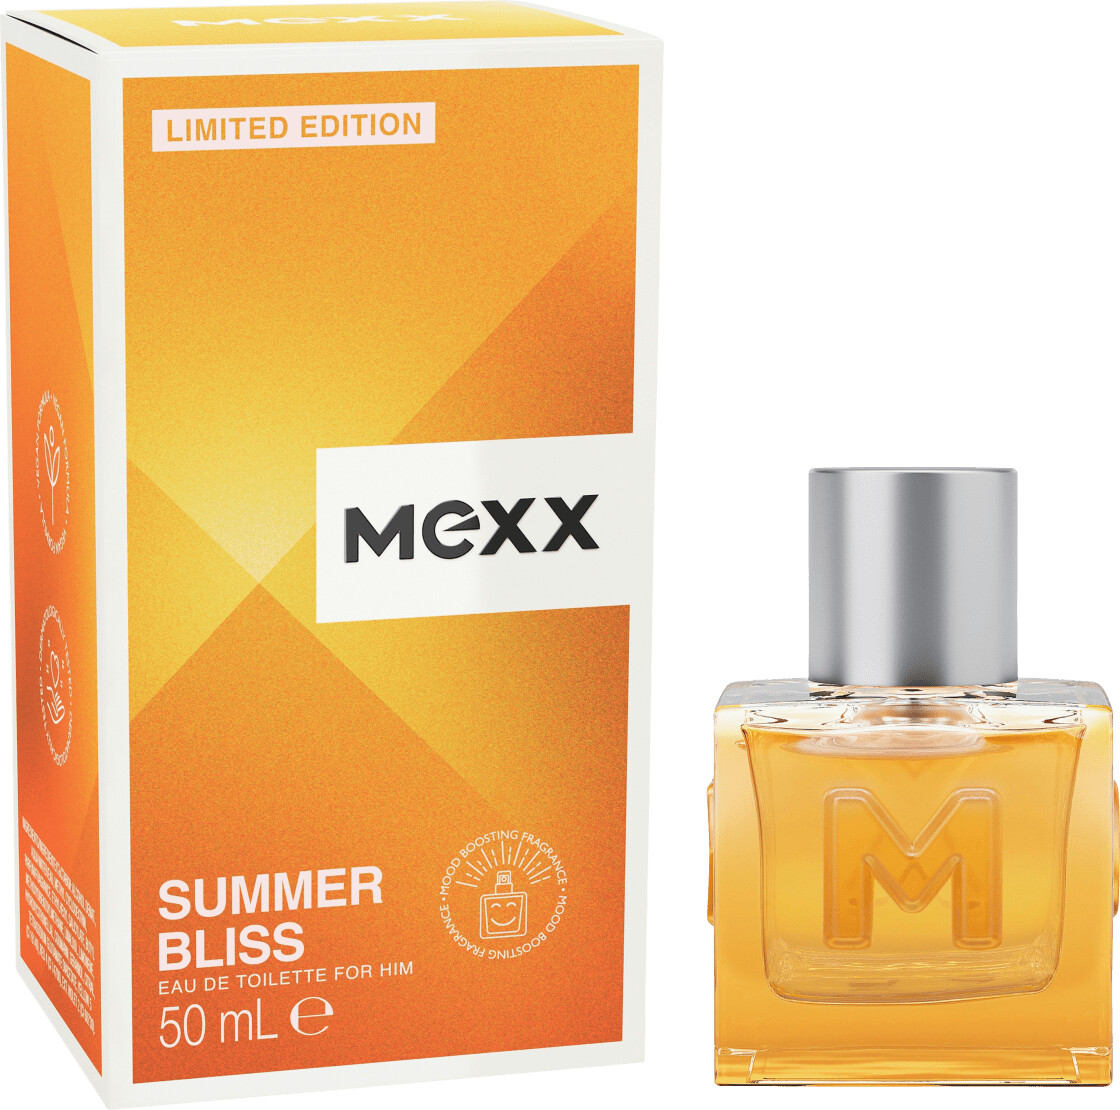 Photos - Men's Fragrance Mexx Summer Bliss Eau de Toilette  (50ml)